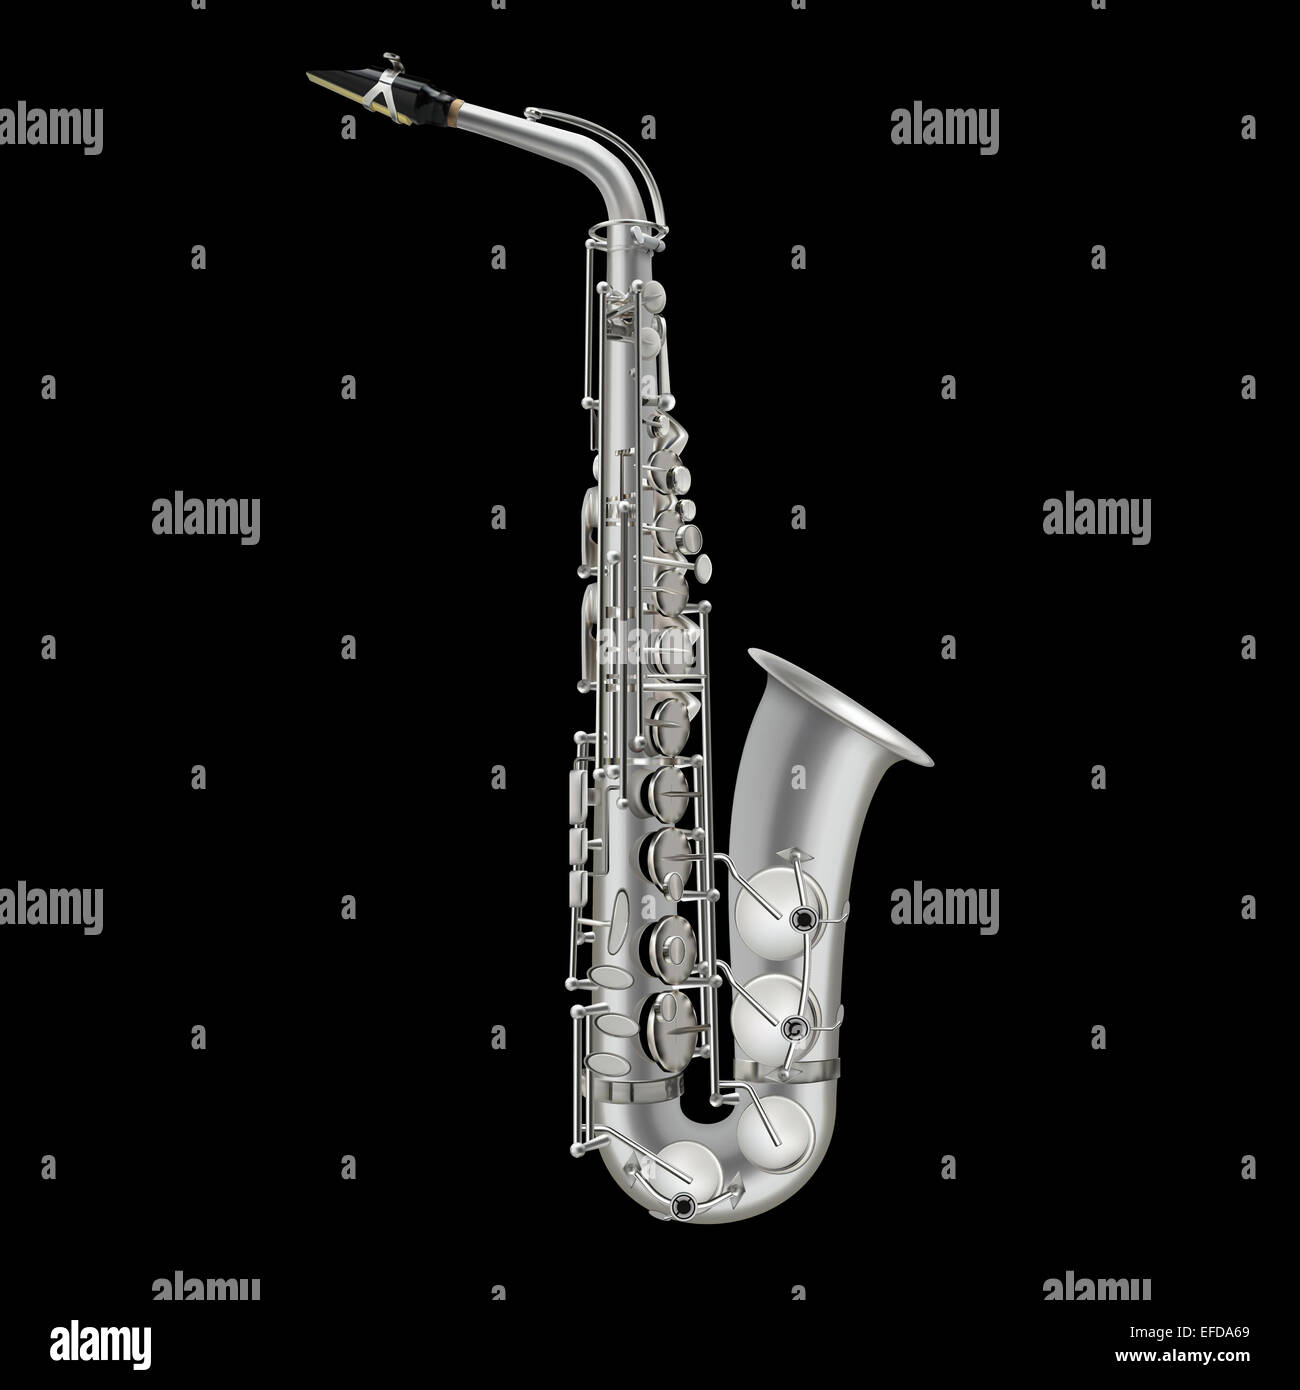 Vecteur saxophone photoréaliste illustration isolé sur fond noir Banque D'Images